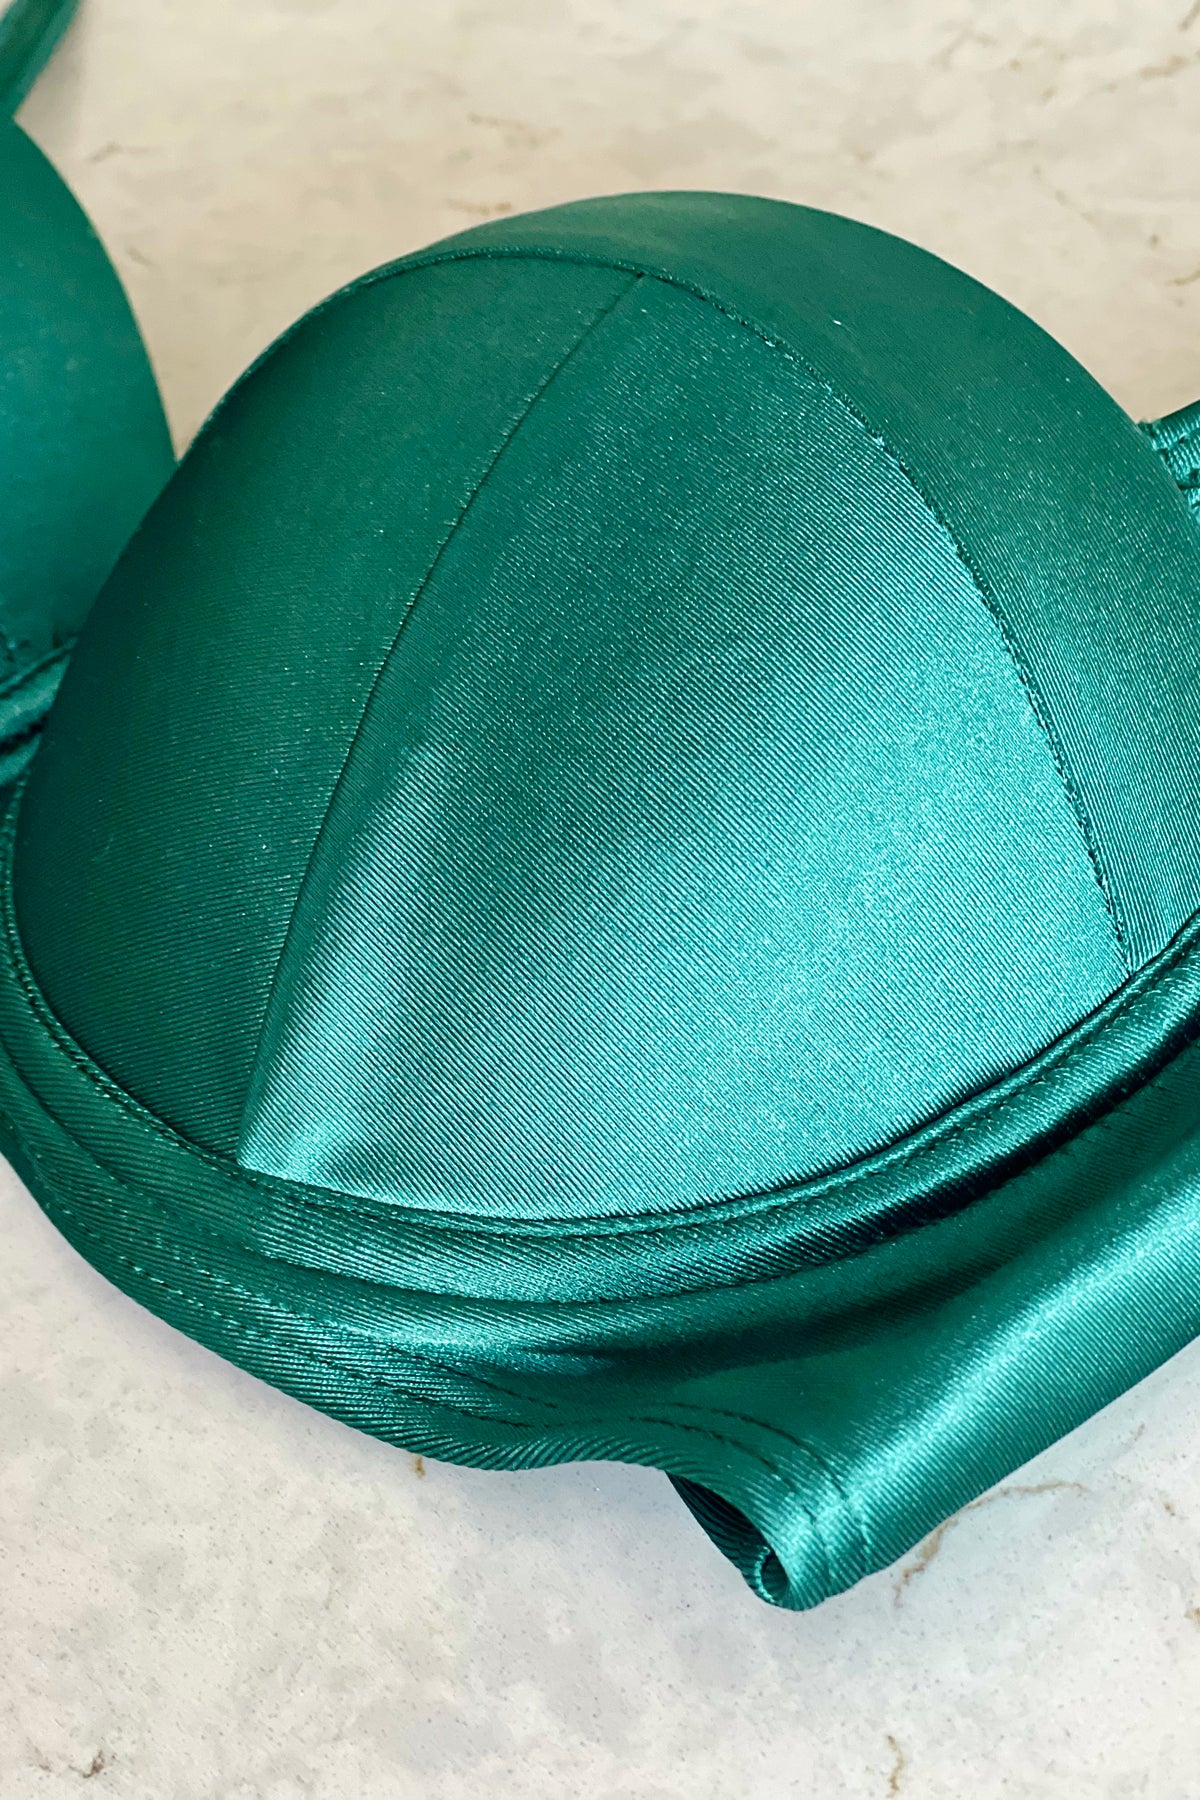 Elegance Bikini Push Up Top with Cups - Emerald Green